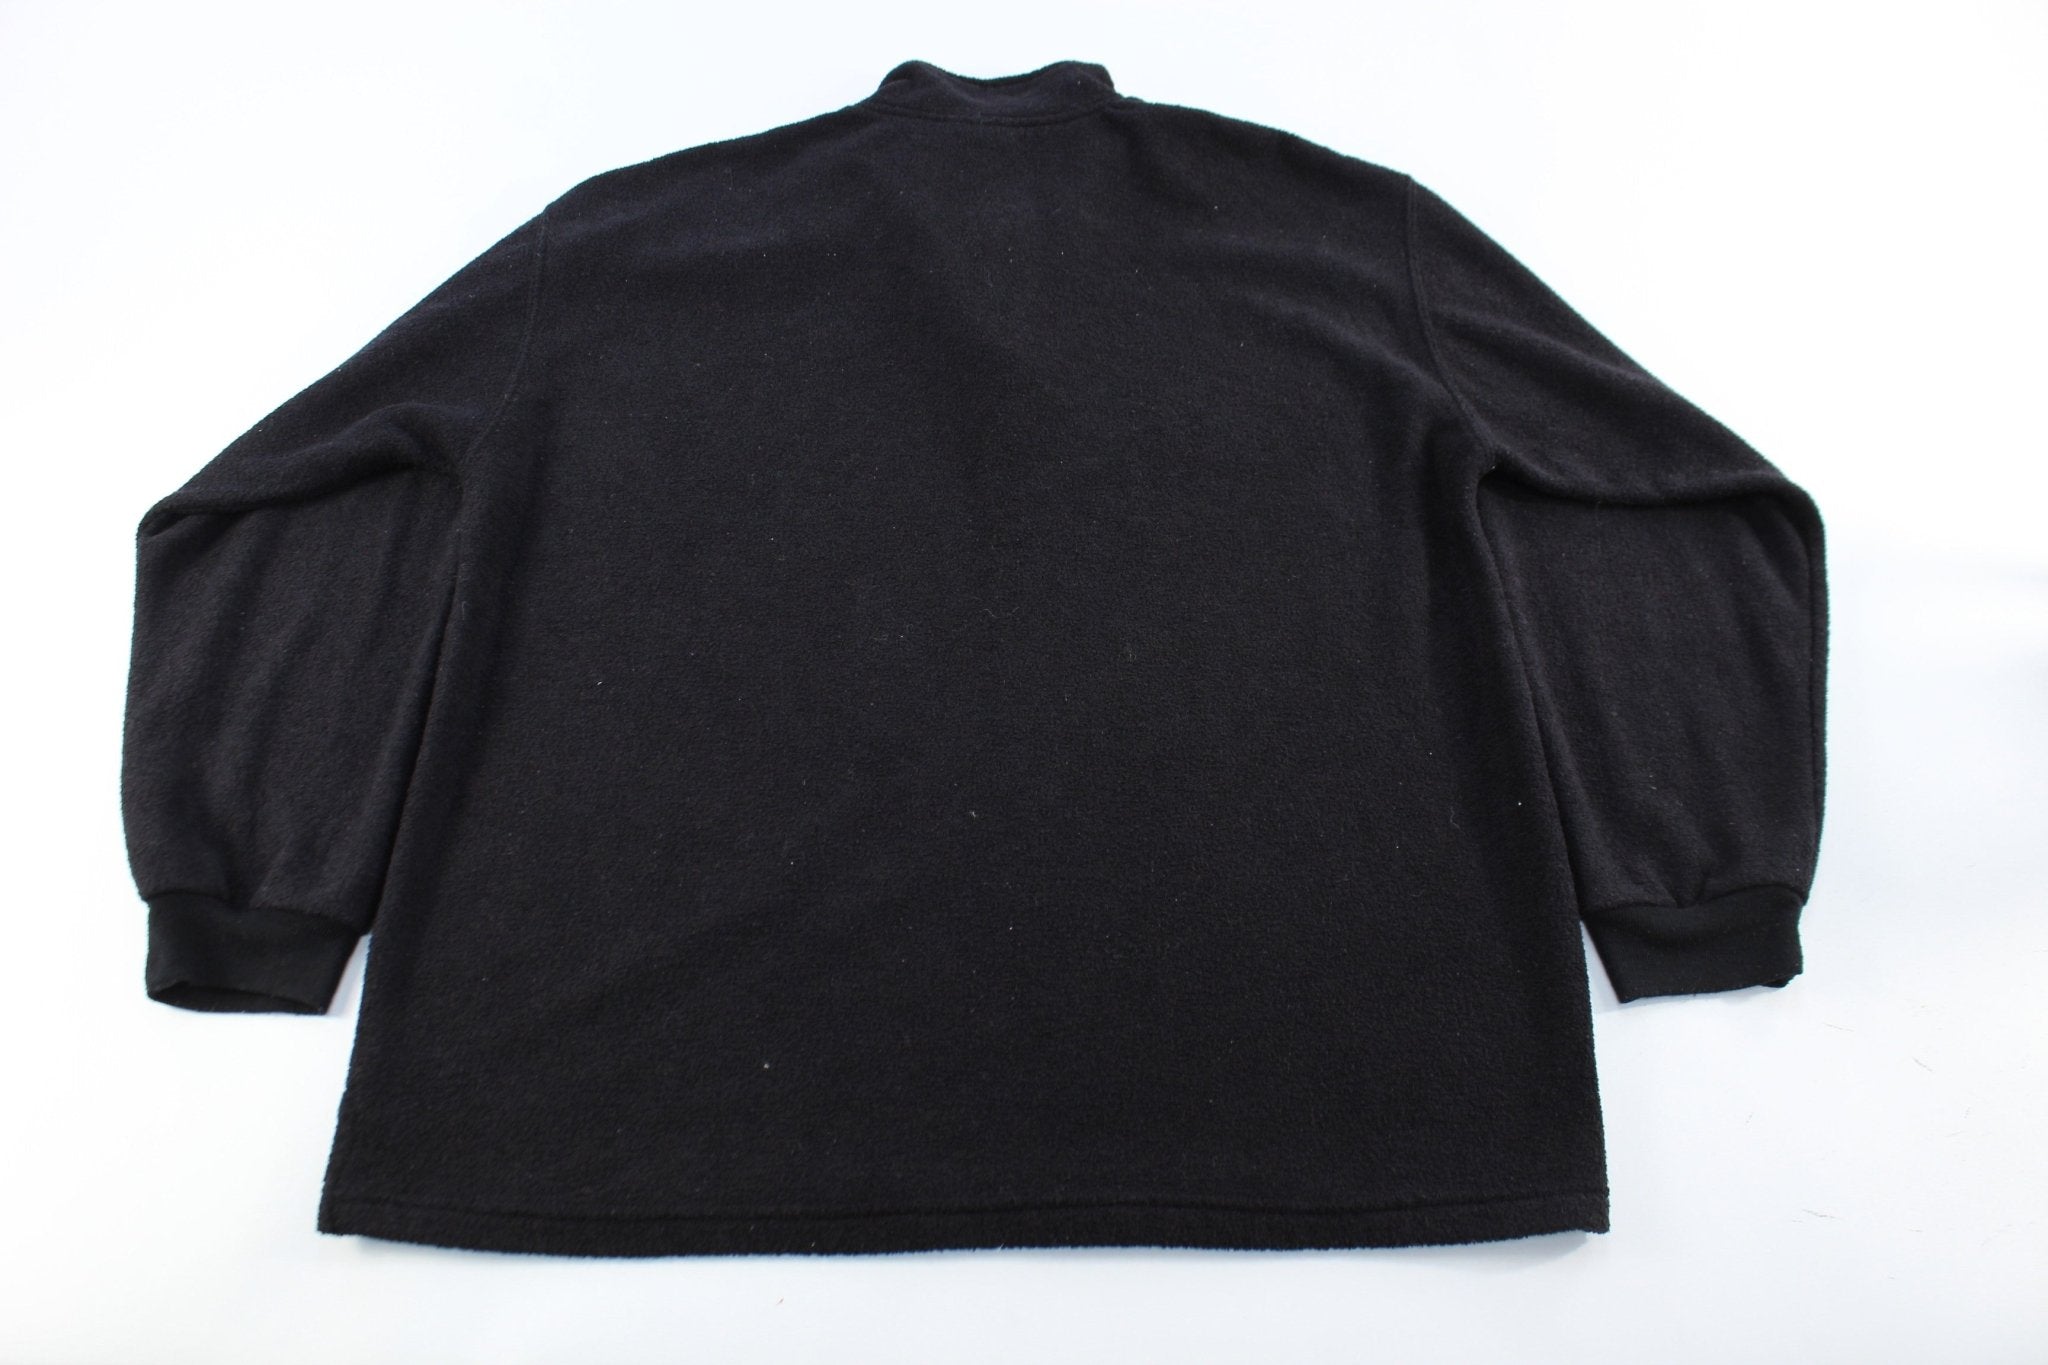 Vintage Walt Disney World Embroidered Black Pullover Jacket - ThriftedThreads.com